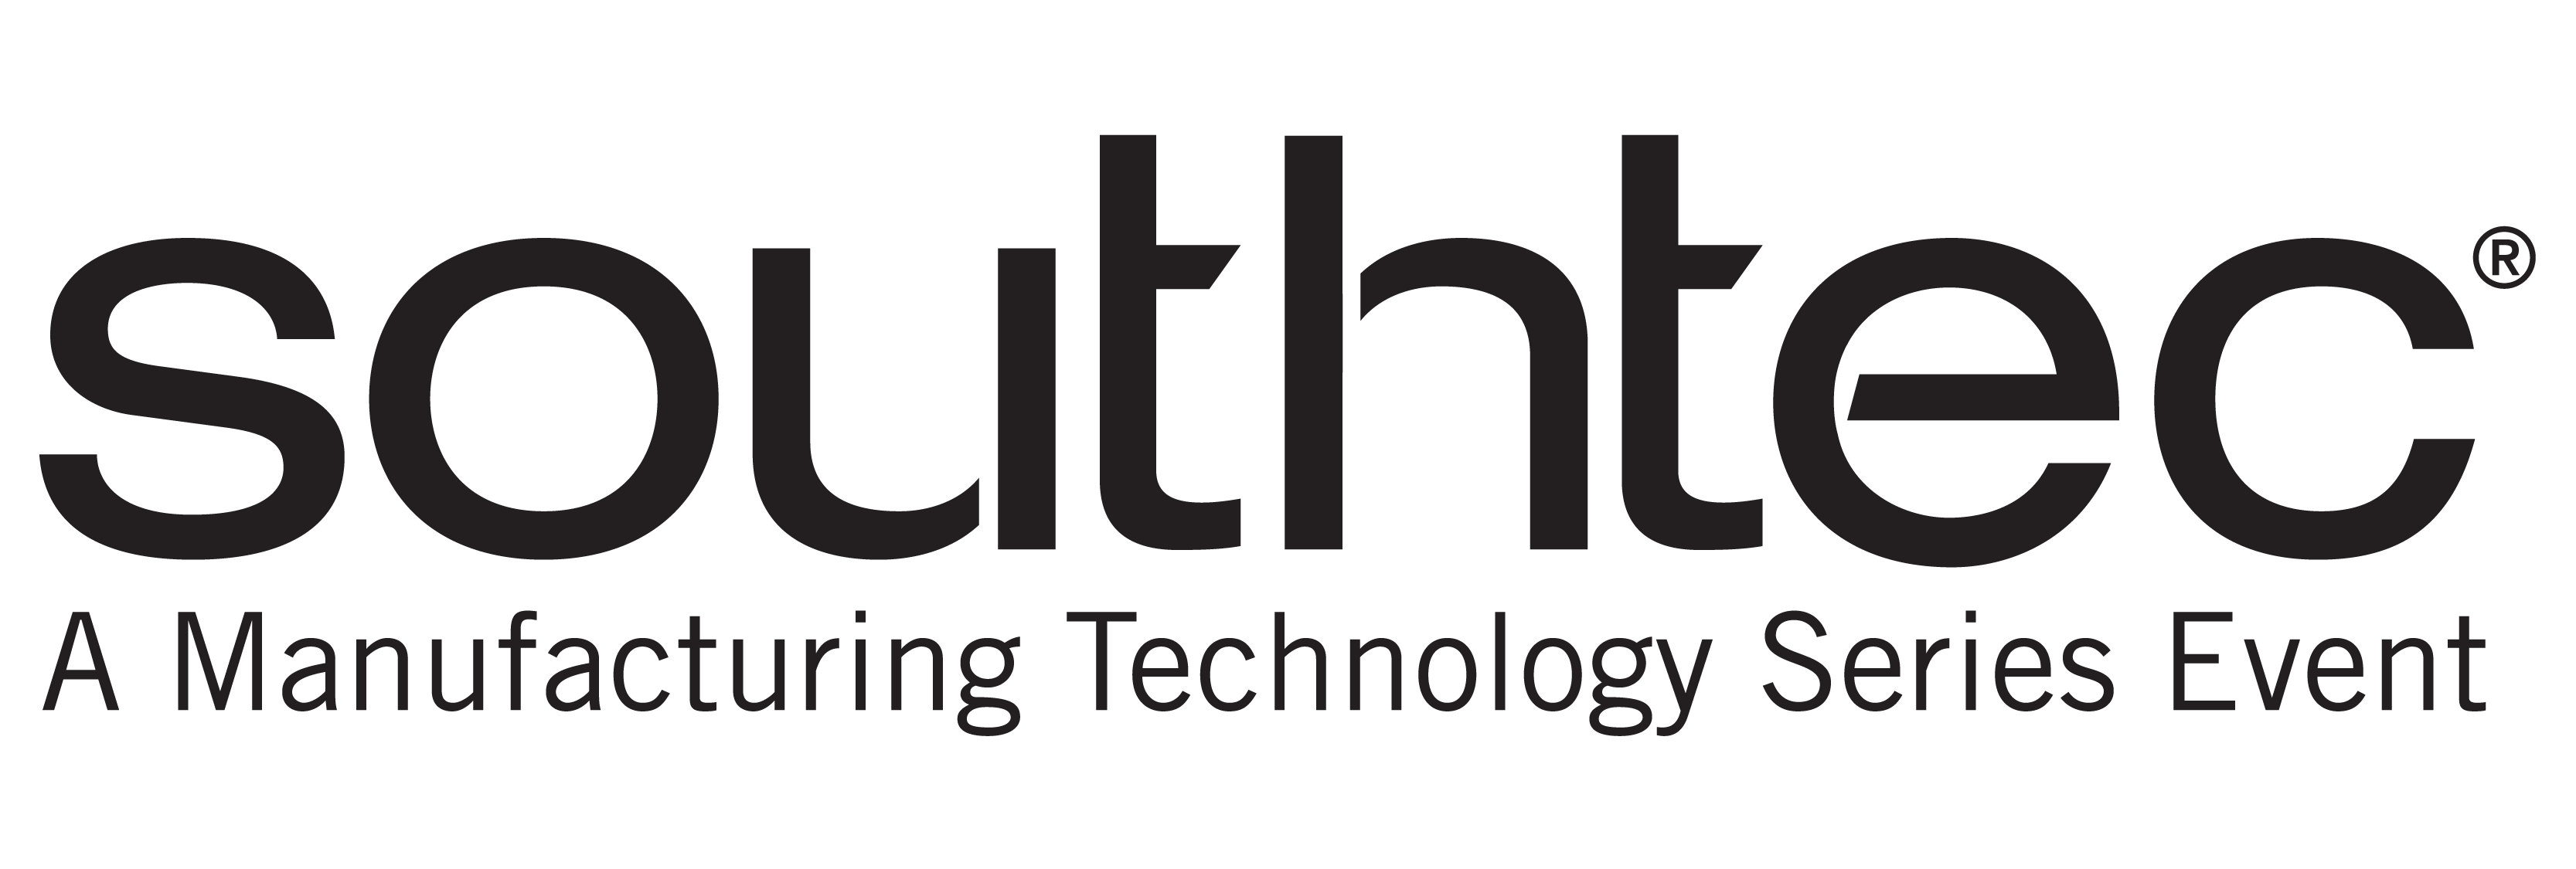 Southtec-Logo-Tagline-Print-BLACK.png